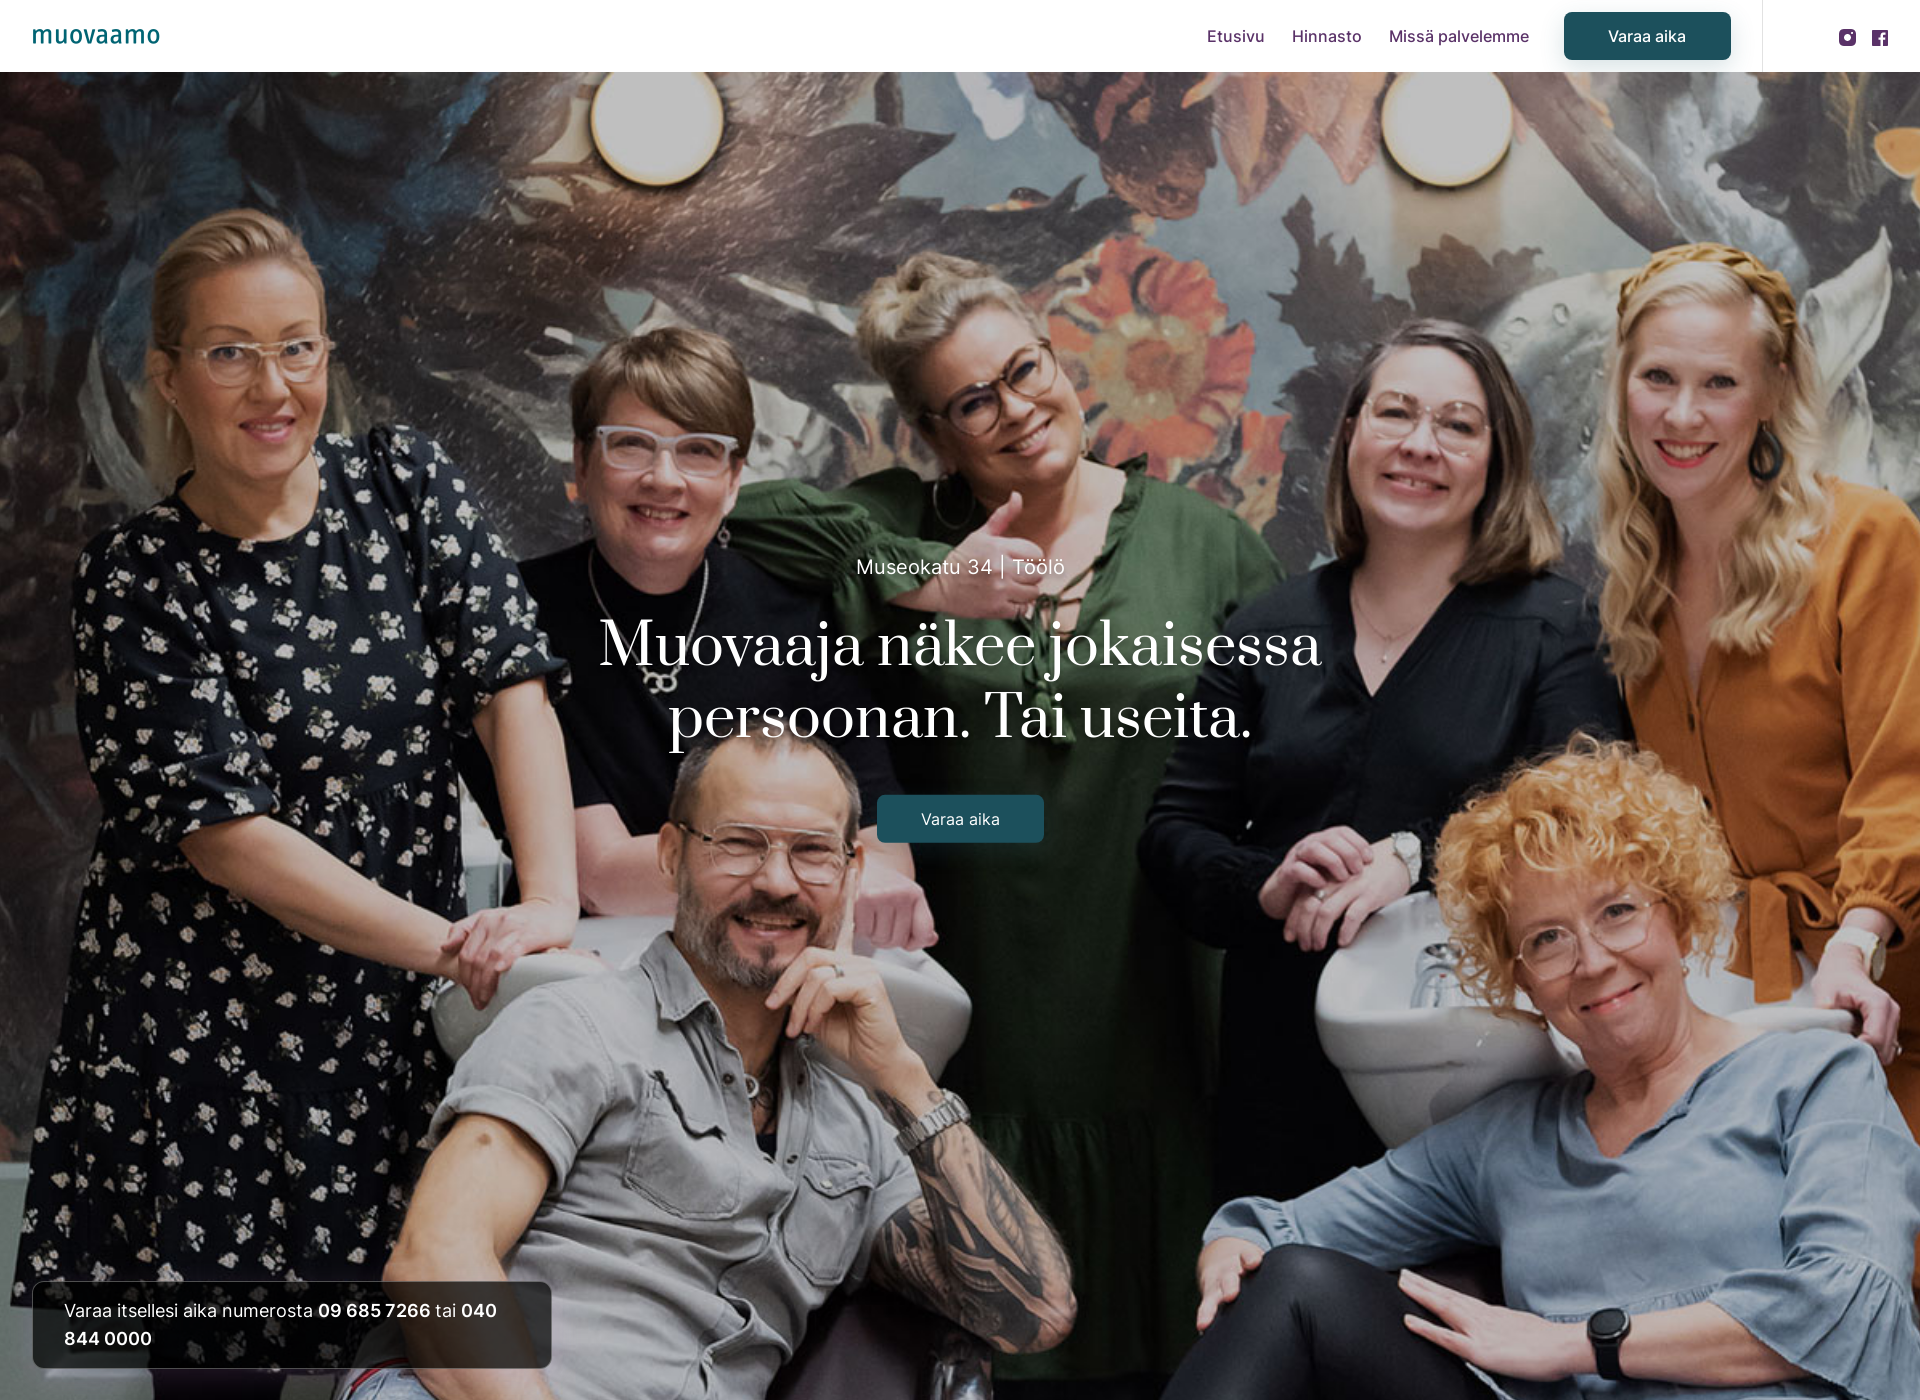 Skärmdump för muovaamo.fi